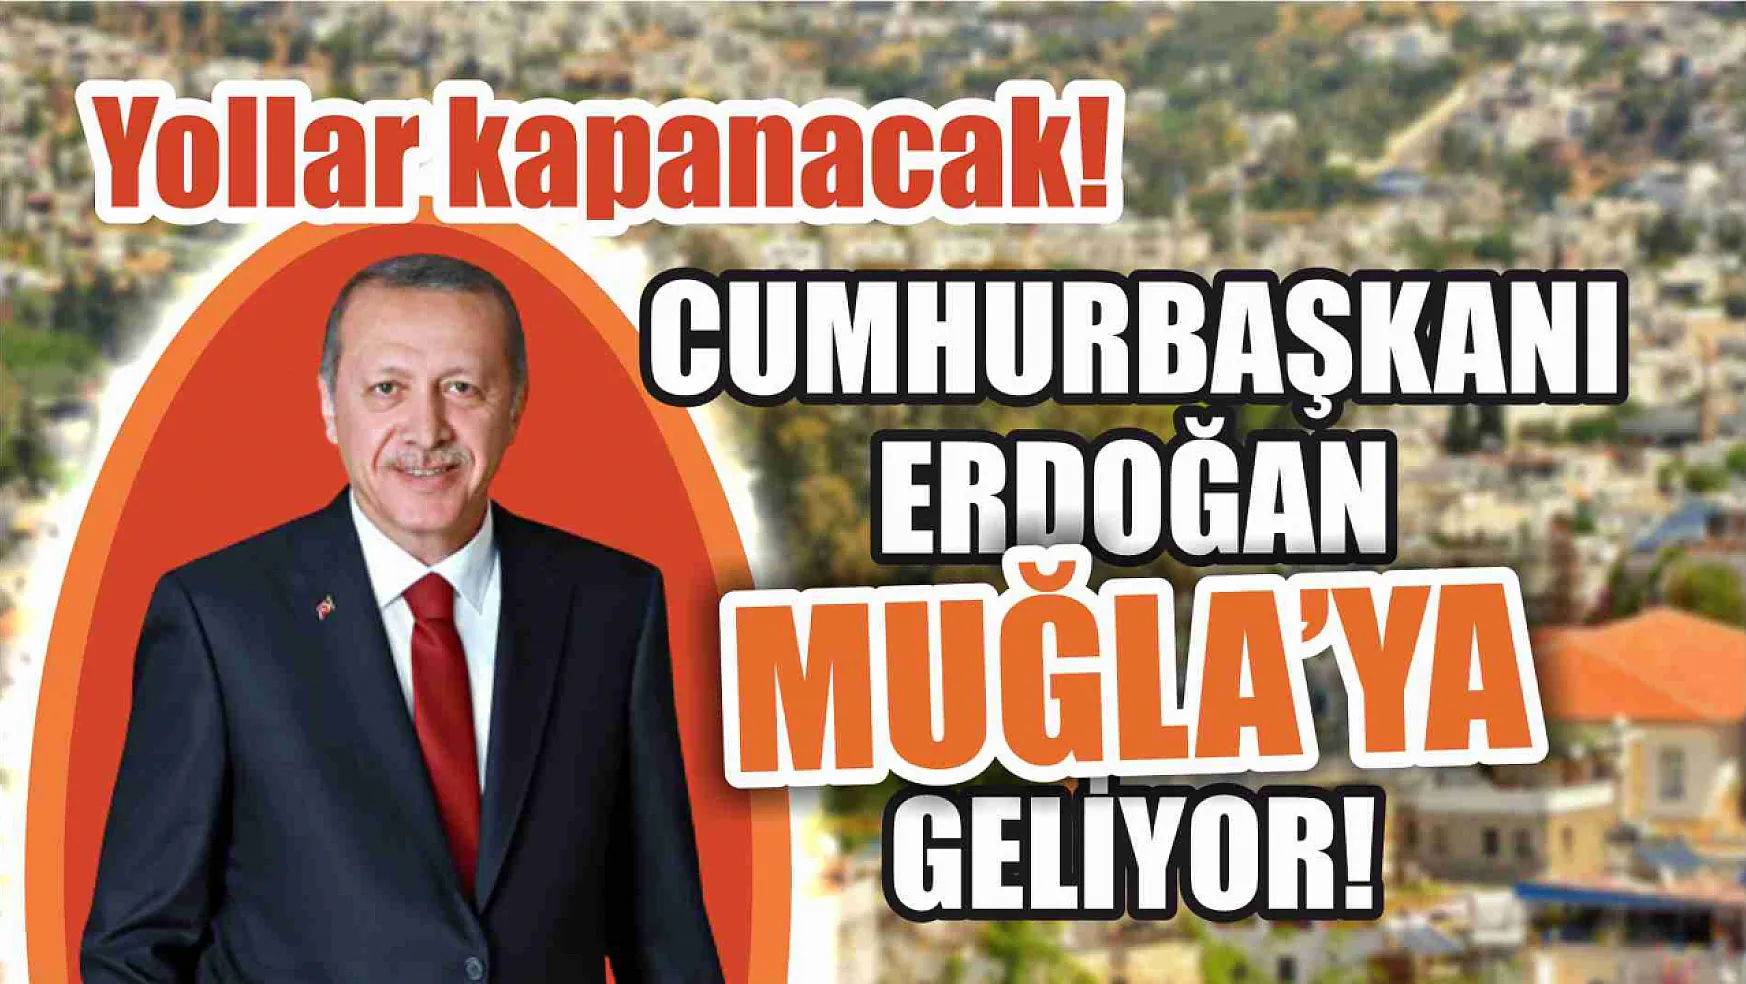 Cumhurbaşkanı Erdoğan Muğla'ya geliyor! Yollar kapanacak!